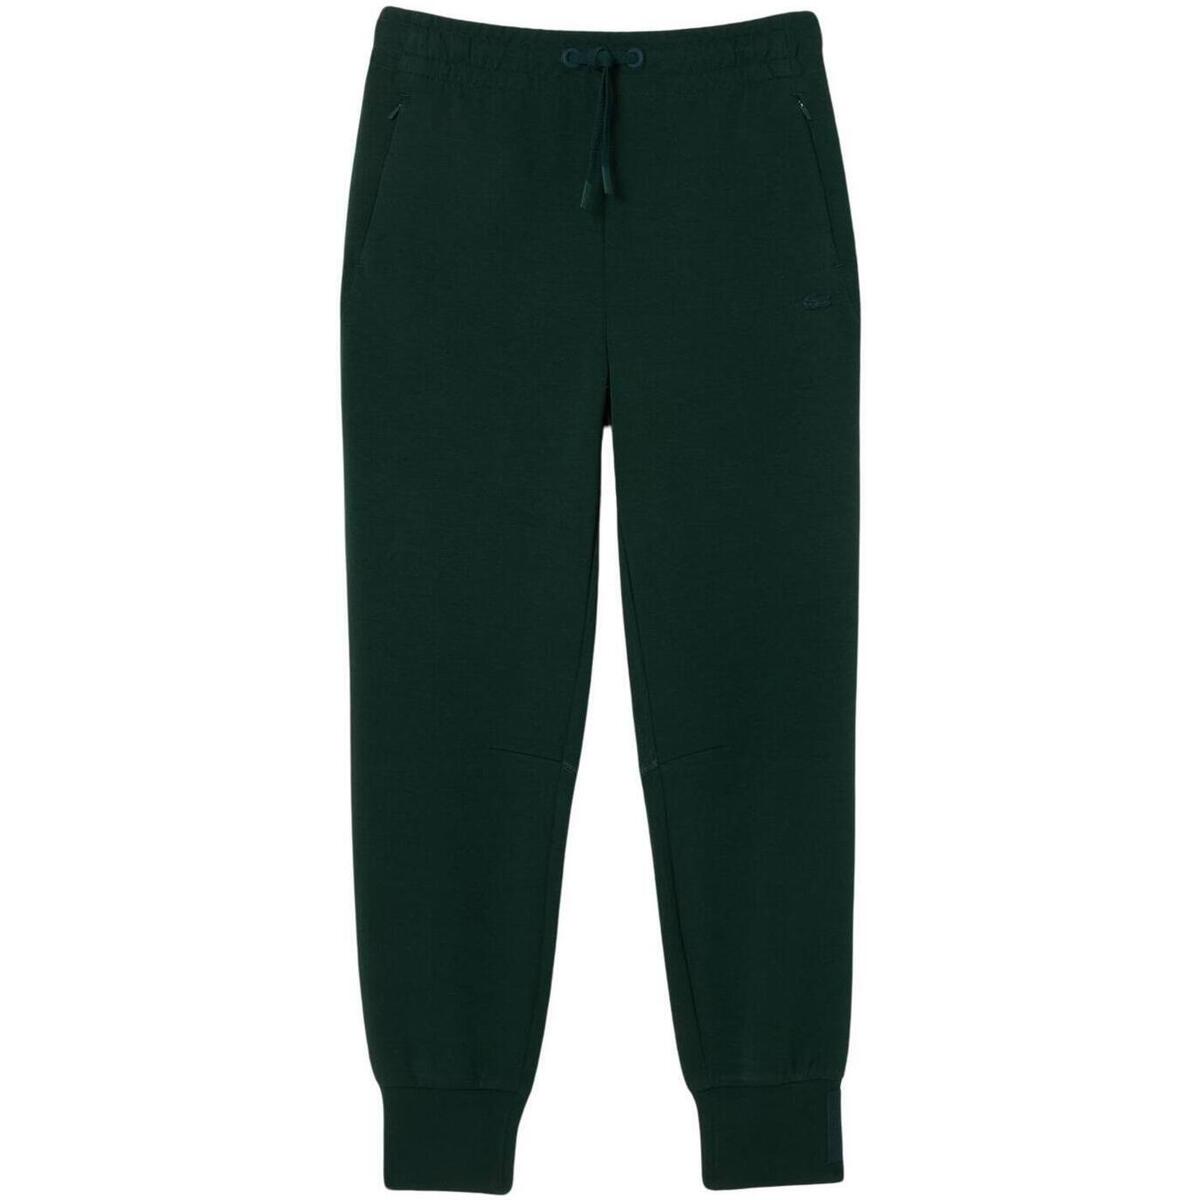 Textiel Dames Broeken / Pantalons Lacoste  Groen